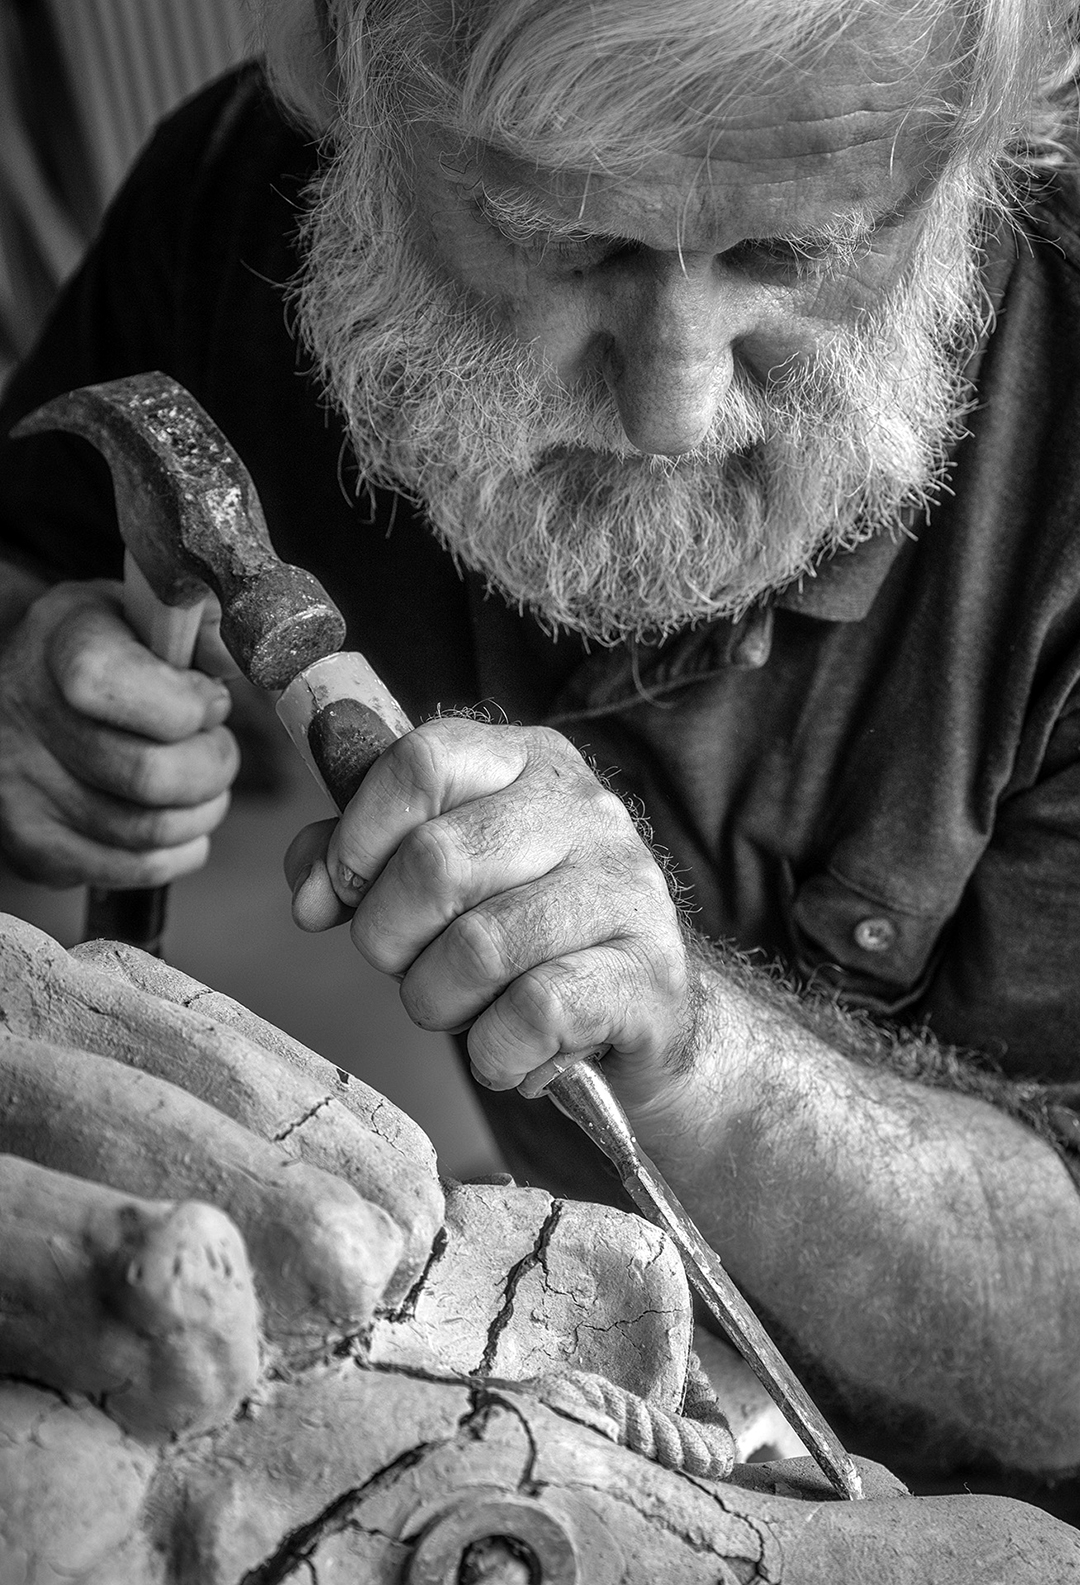  Paul Bastian,  The Sculptor  